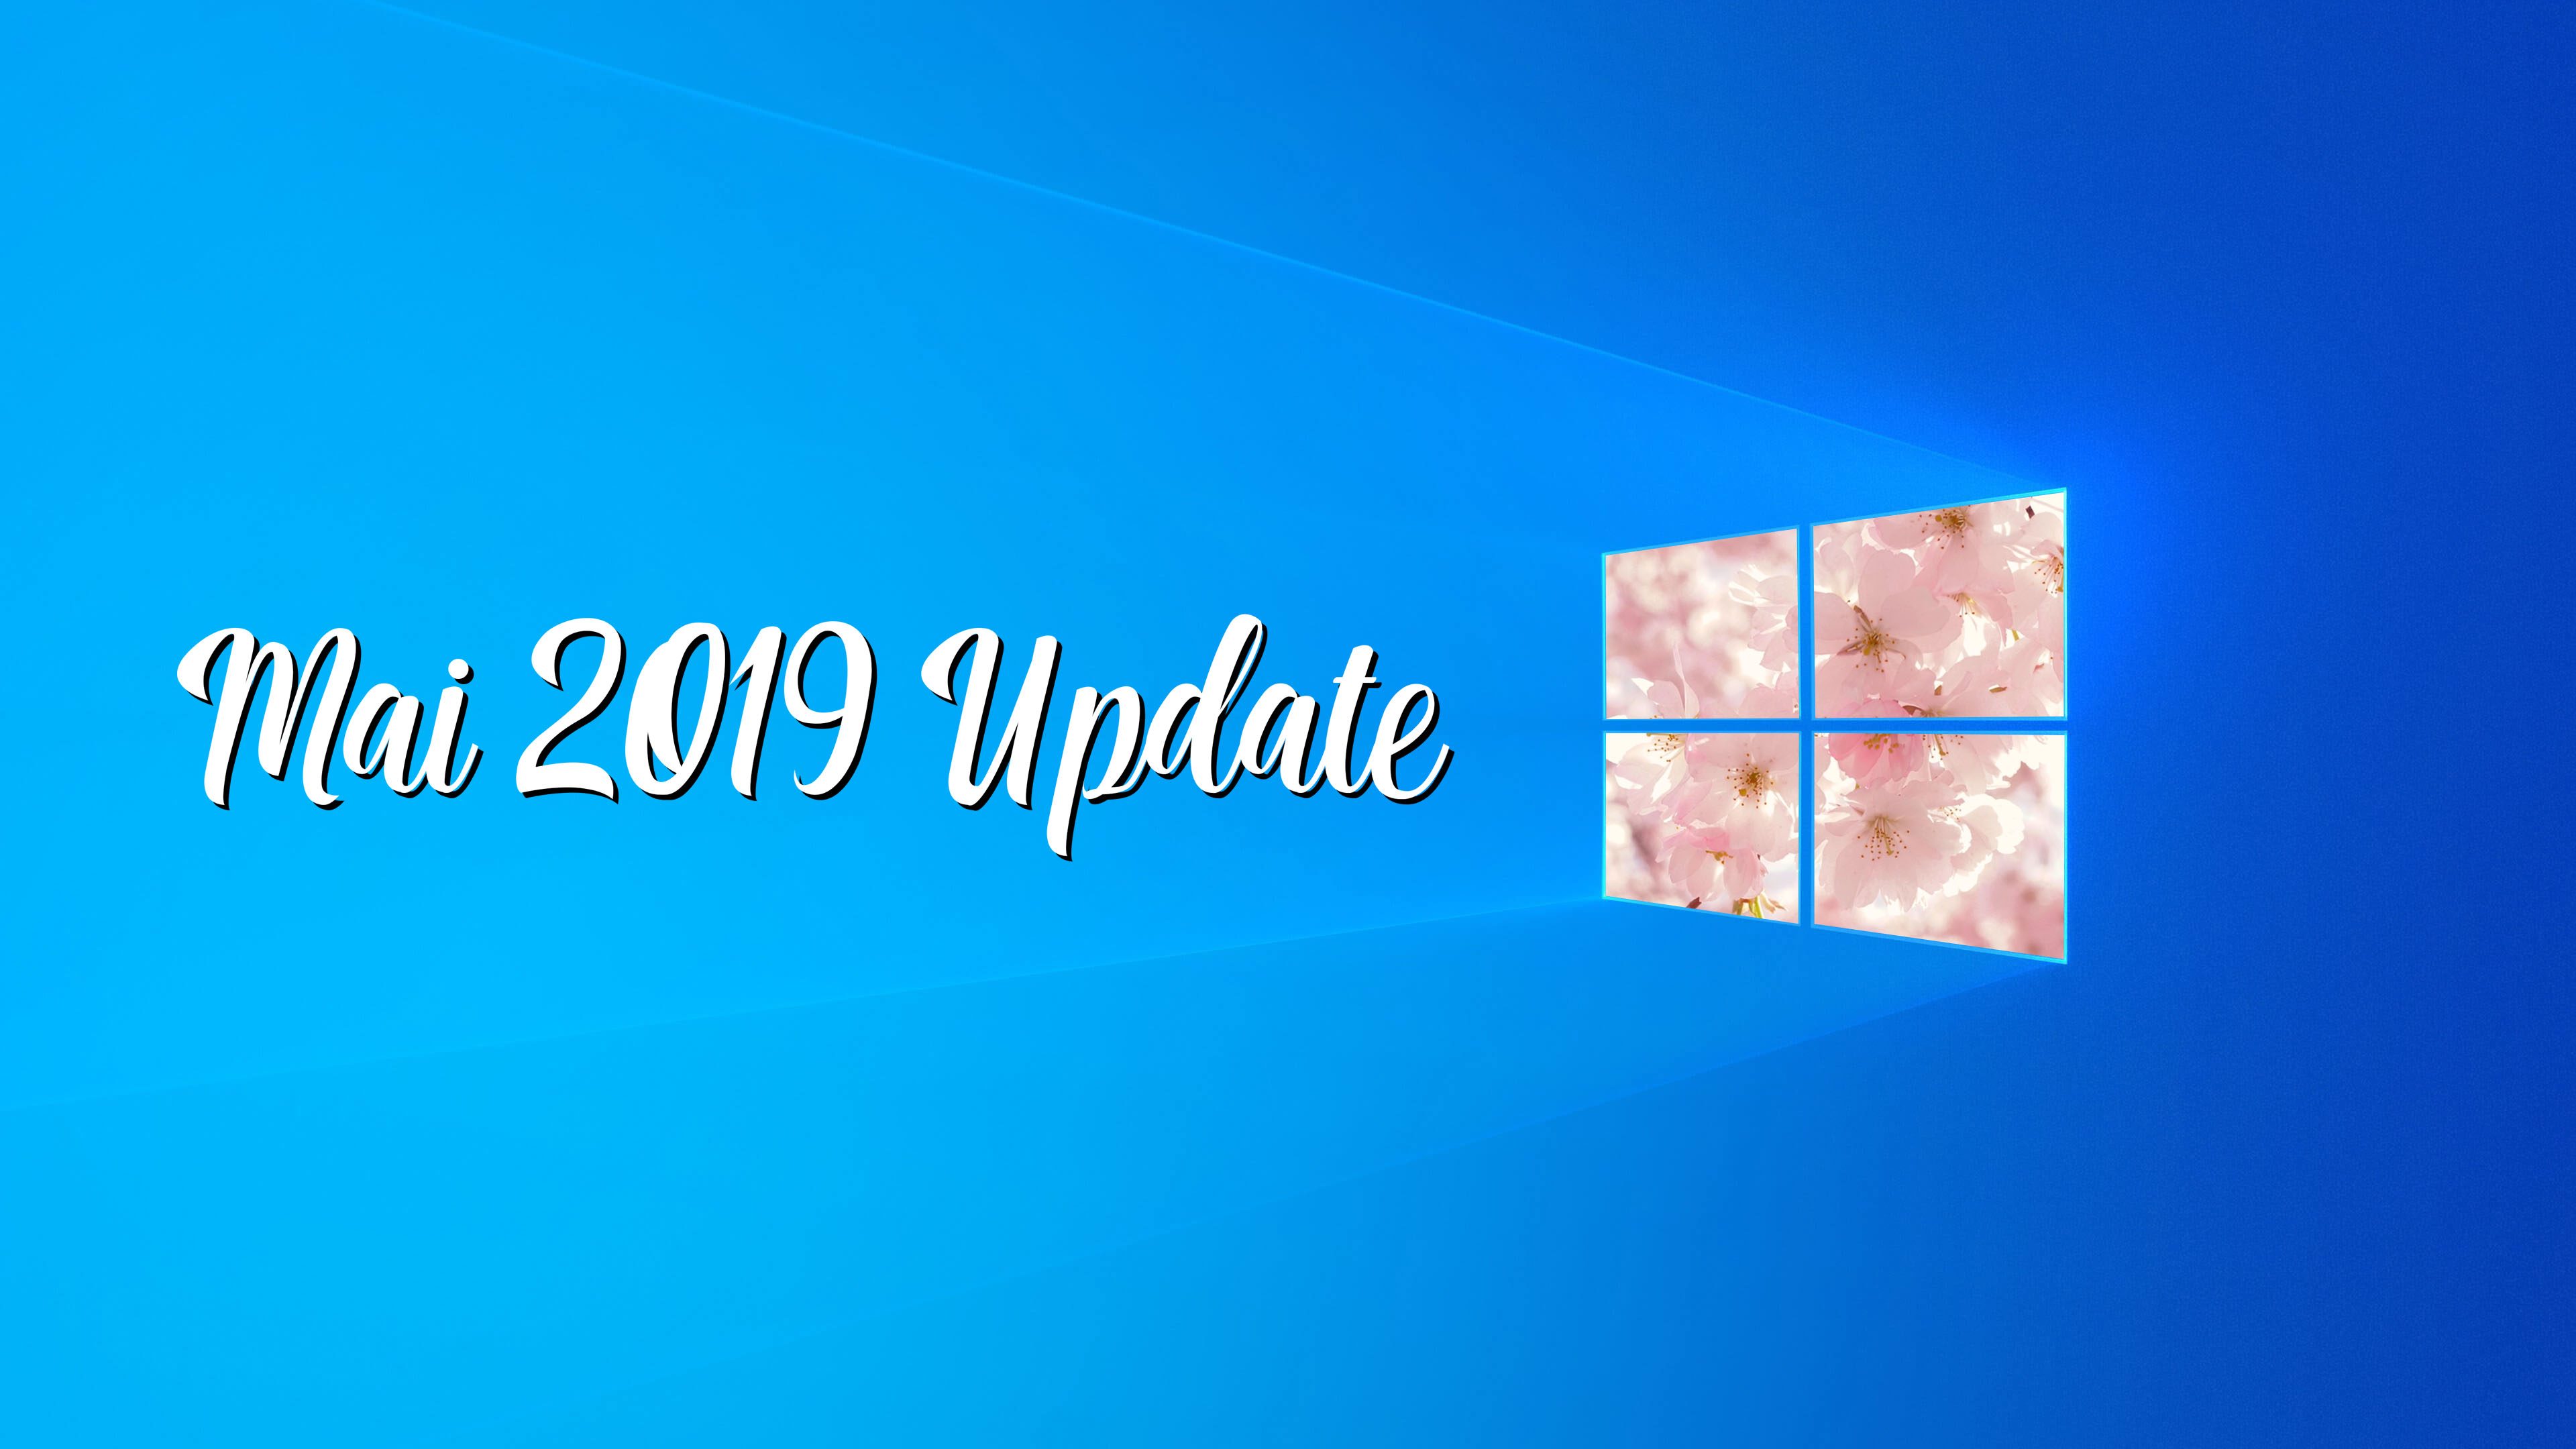 Windows 10 Mai 2019 Update jetzt für MSDN-Abonnenten verfügbar